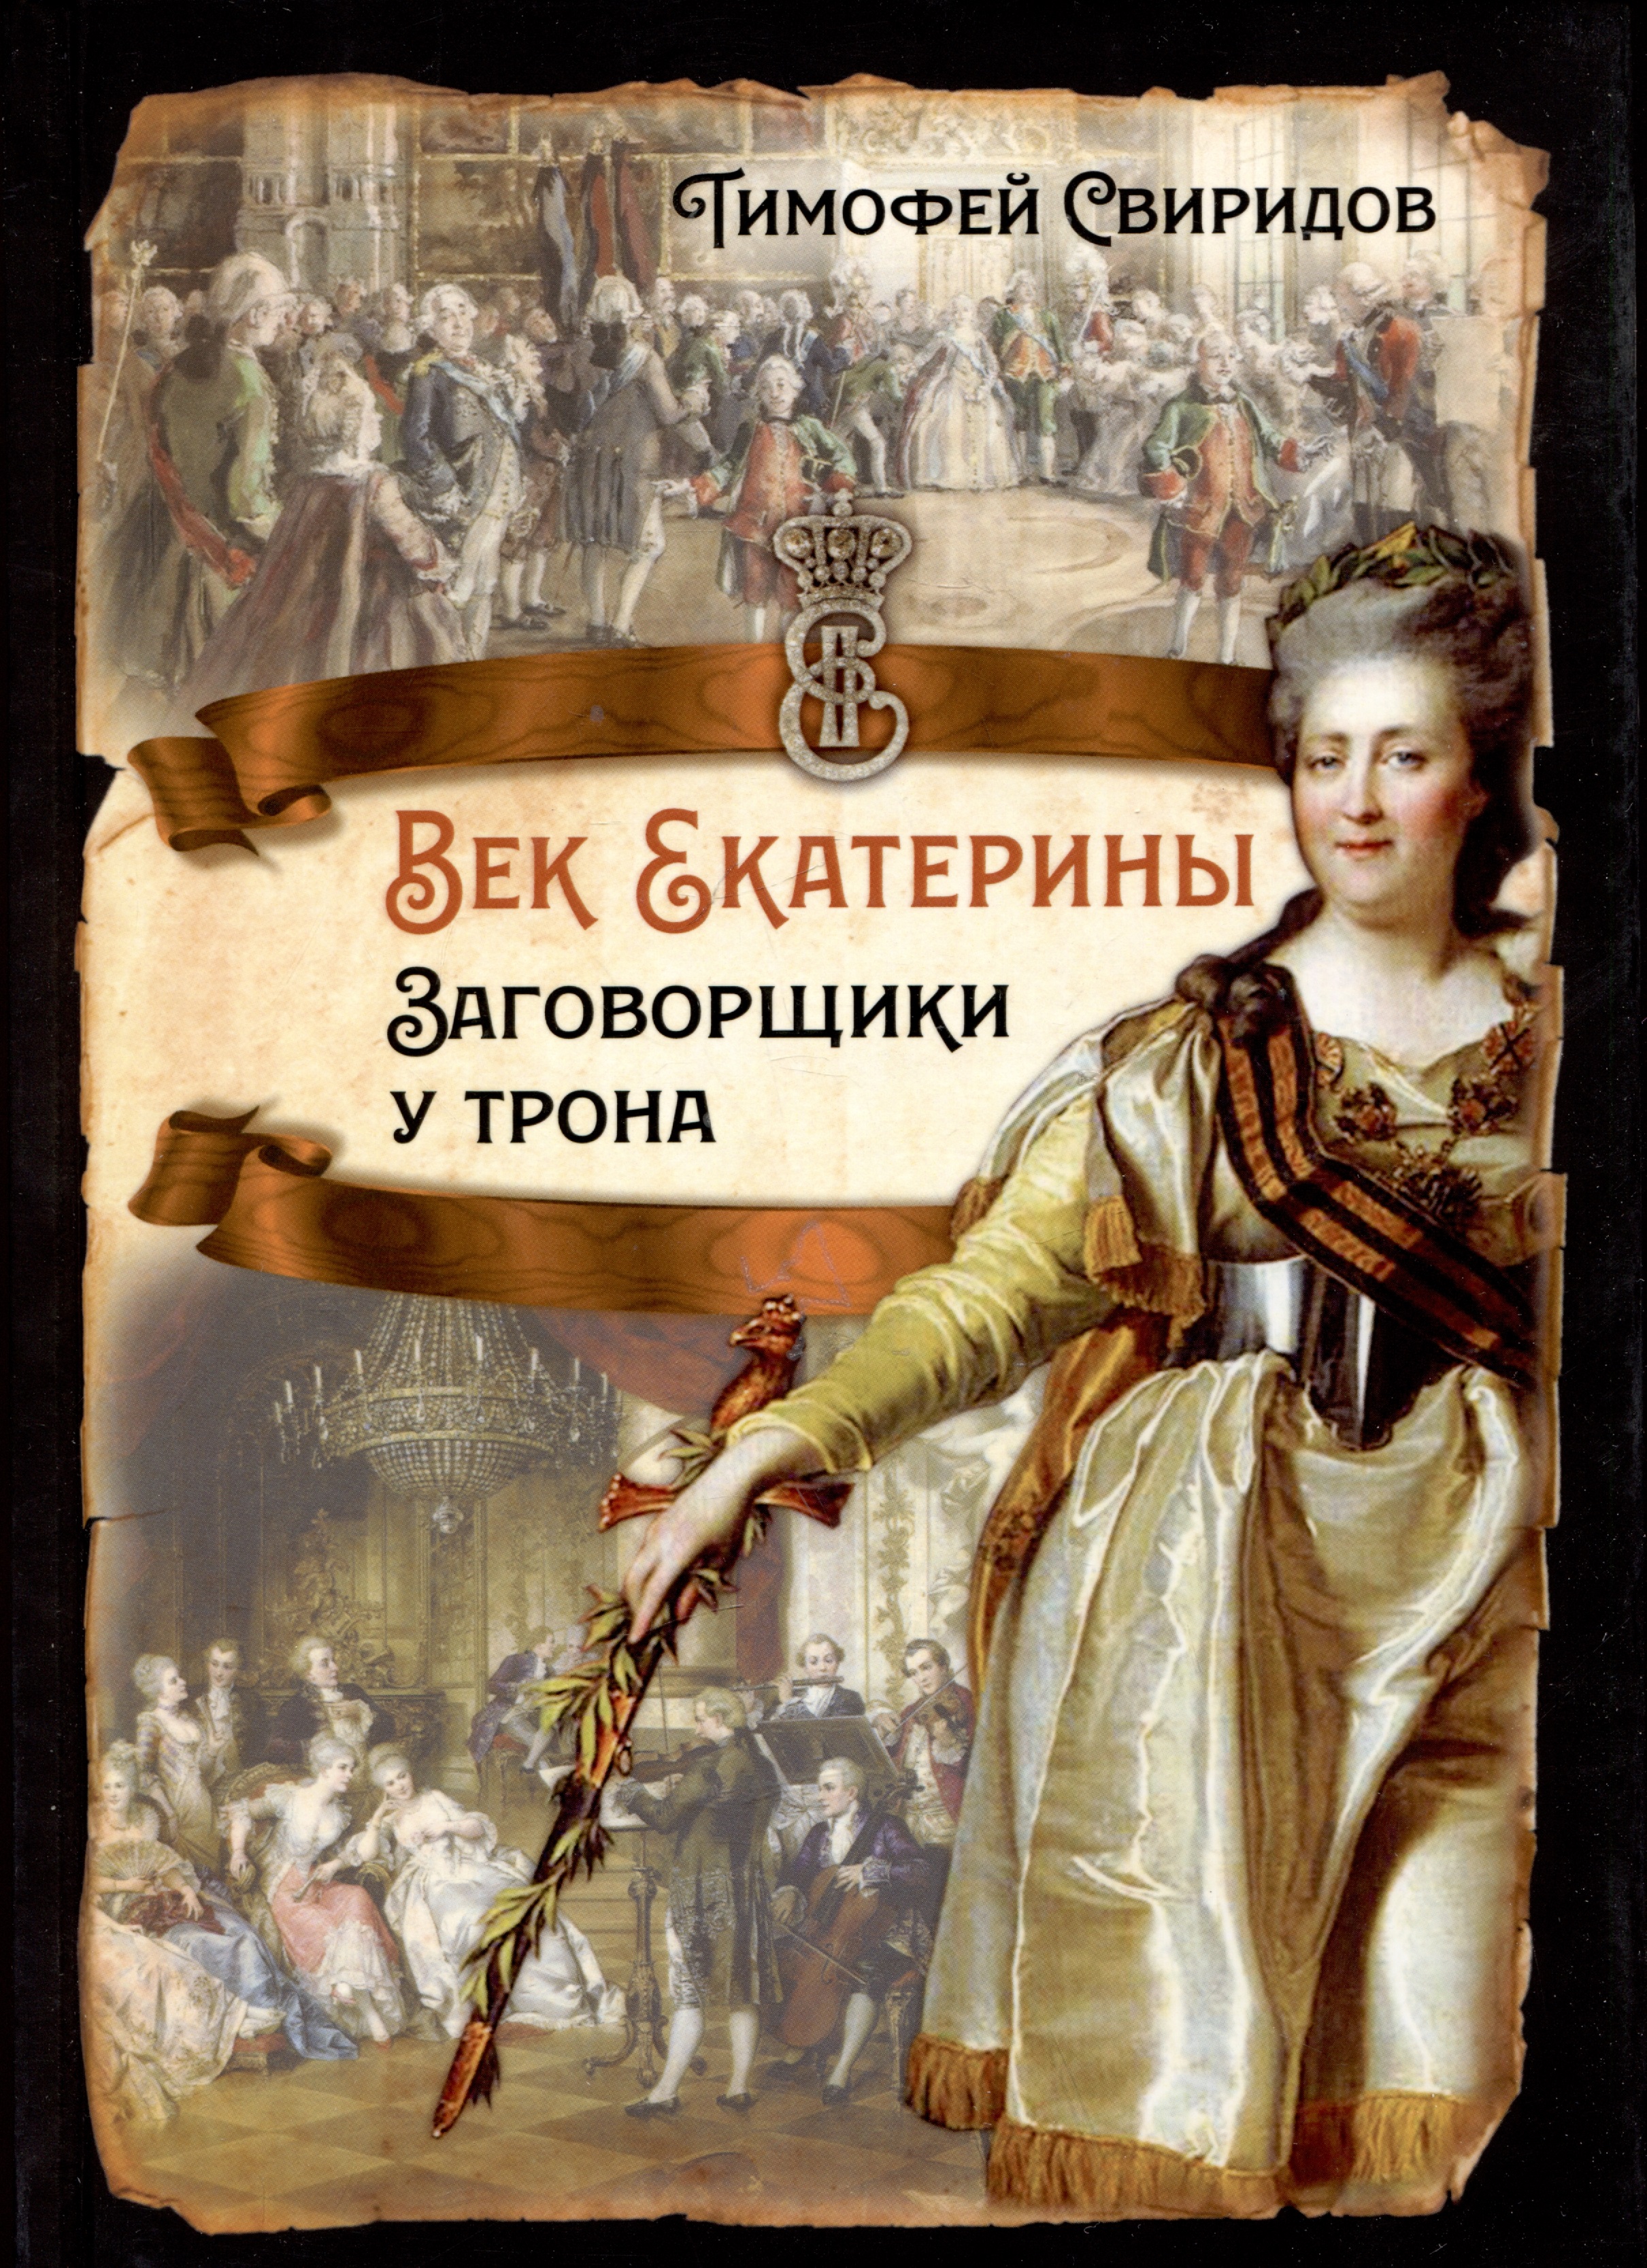 казаковский м век екатерины Век Екатерины. Заговорщики у трона